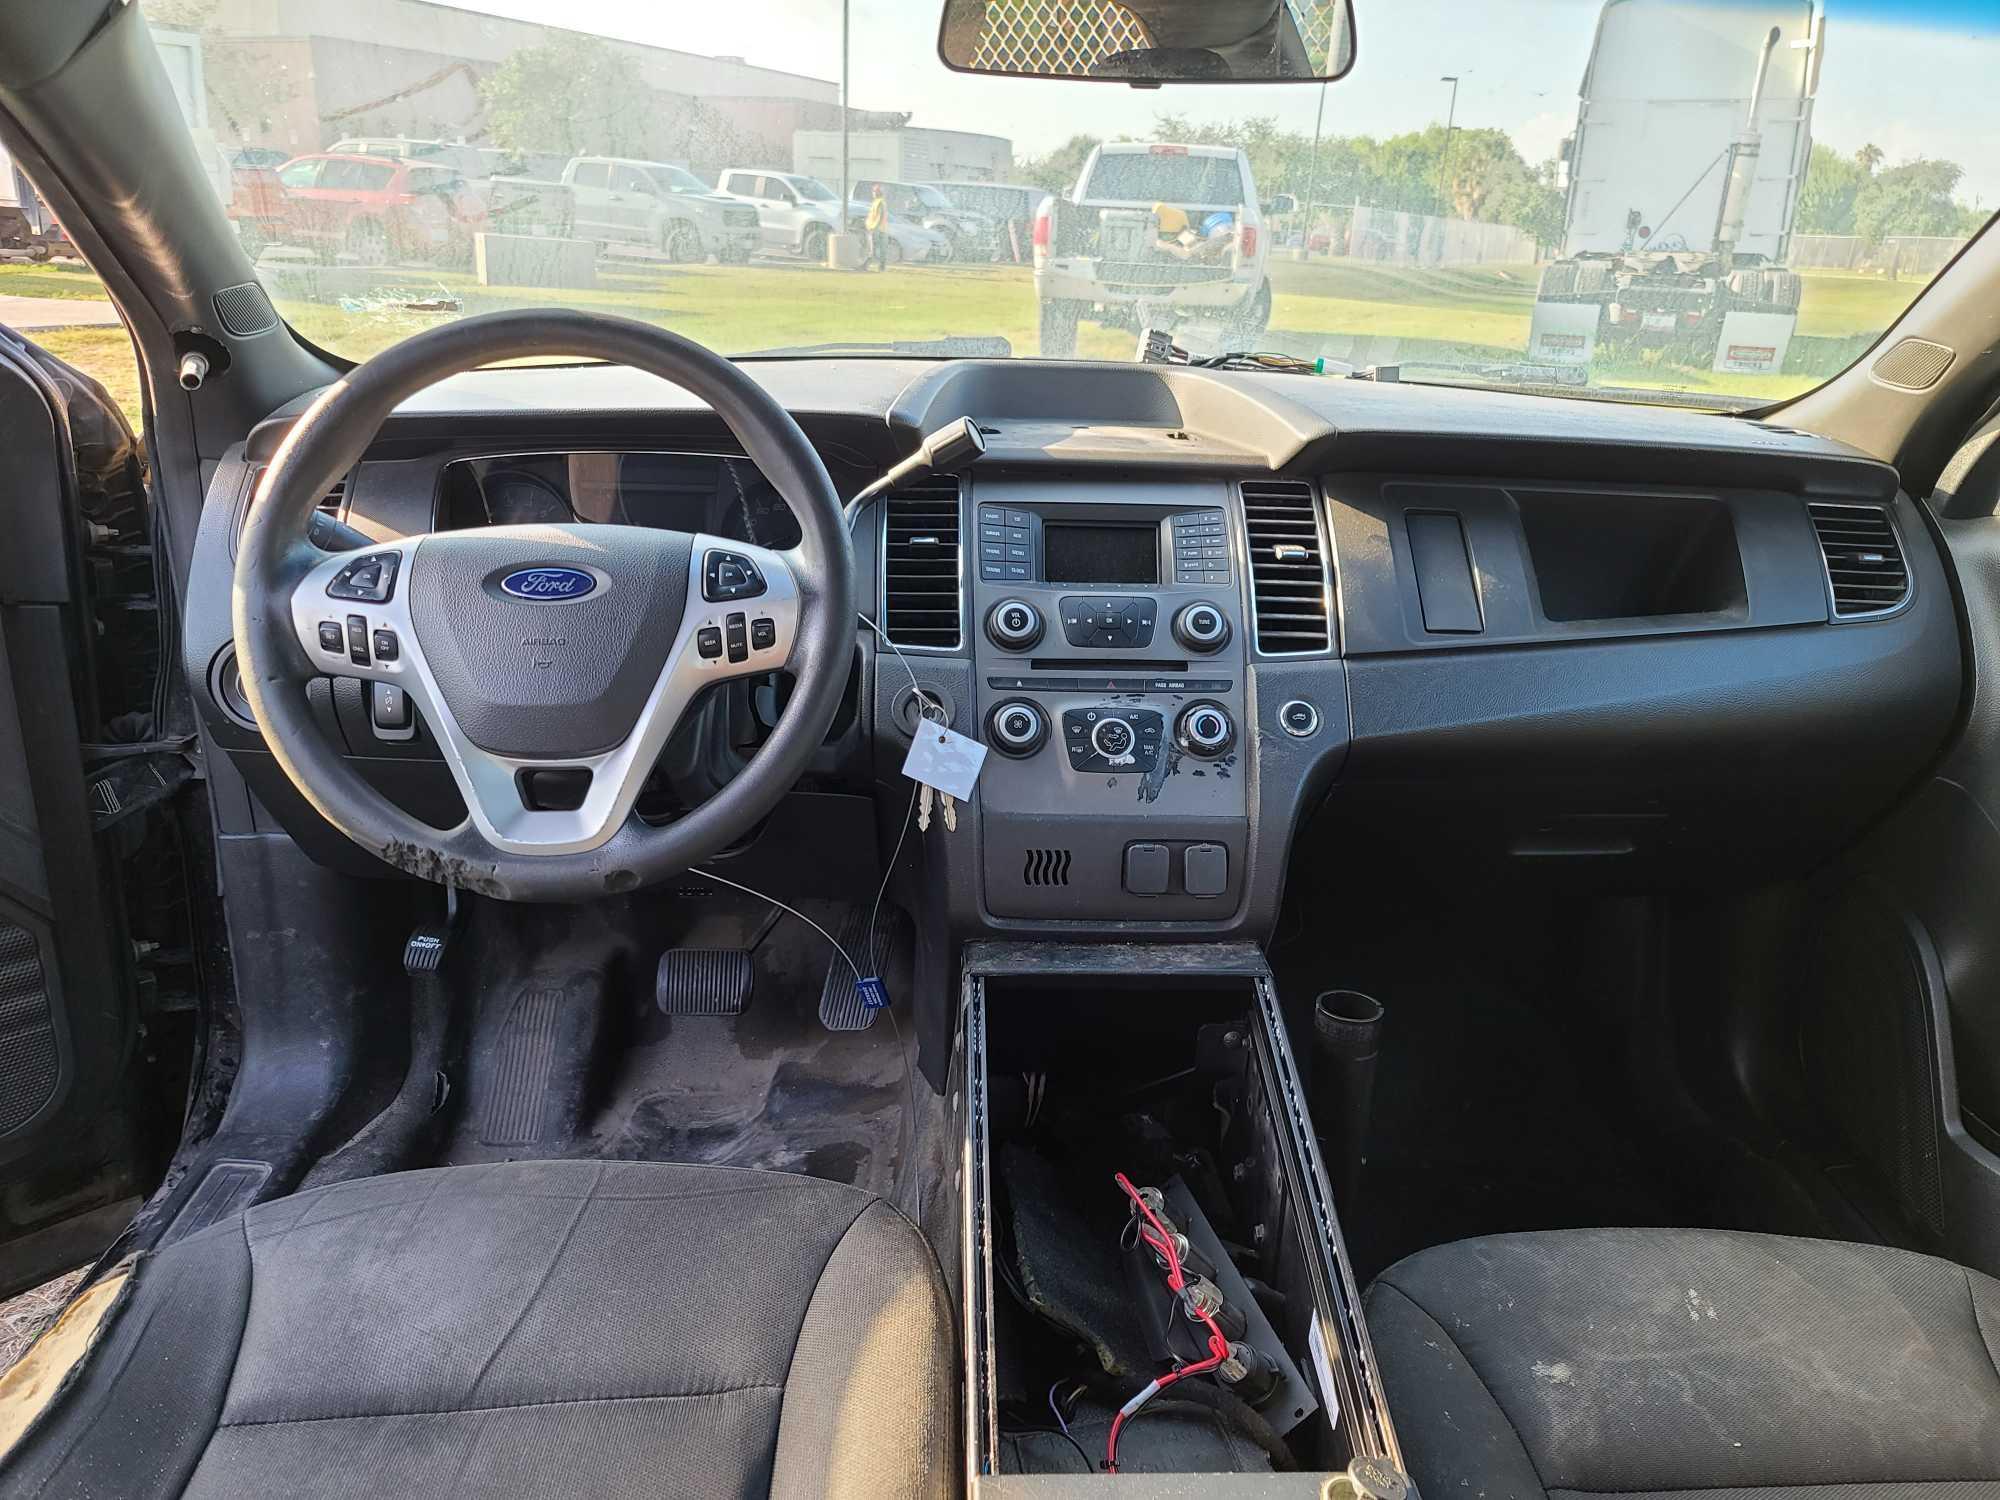 2015 Ford Taurus Passenger Car, VIN # 1FAHP2MK0FG140805